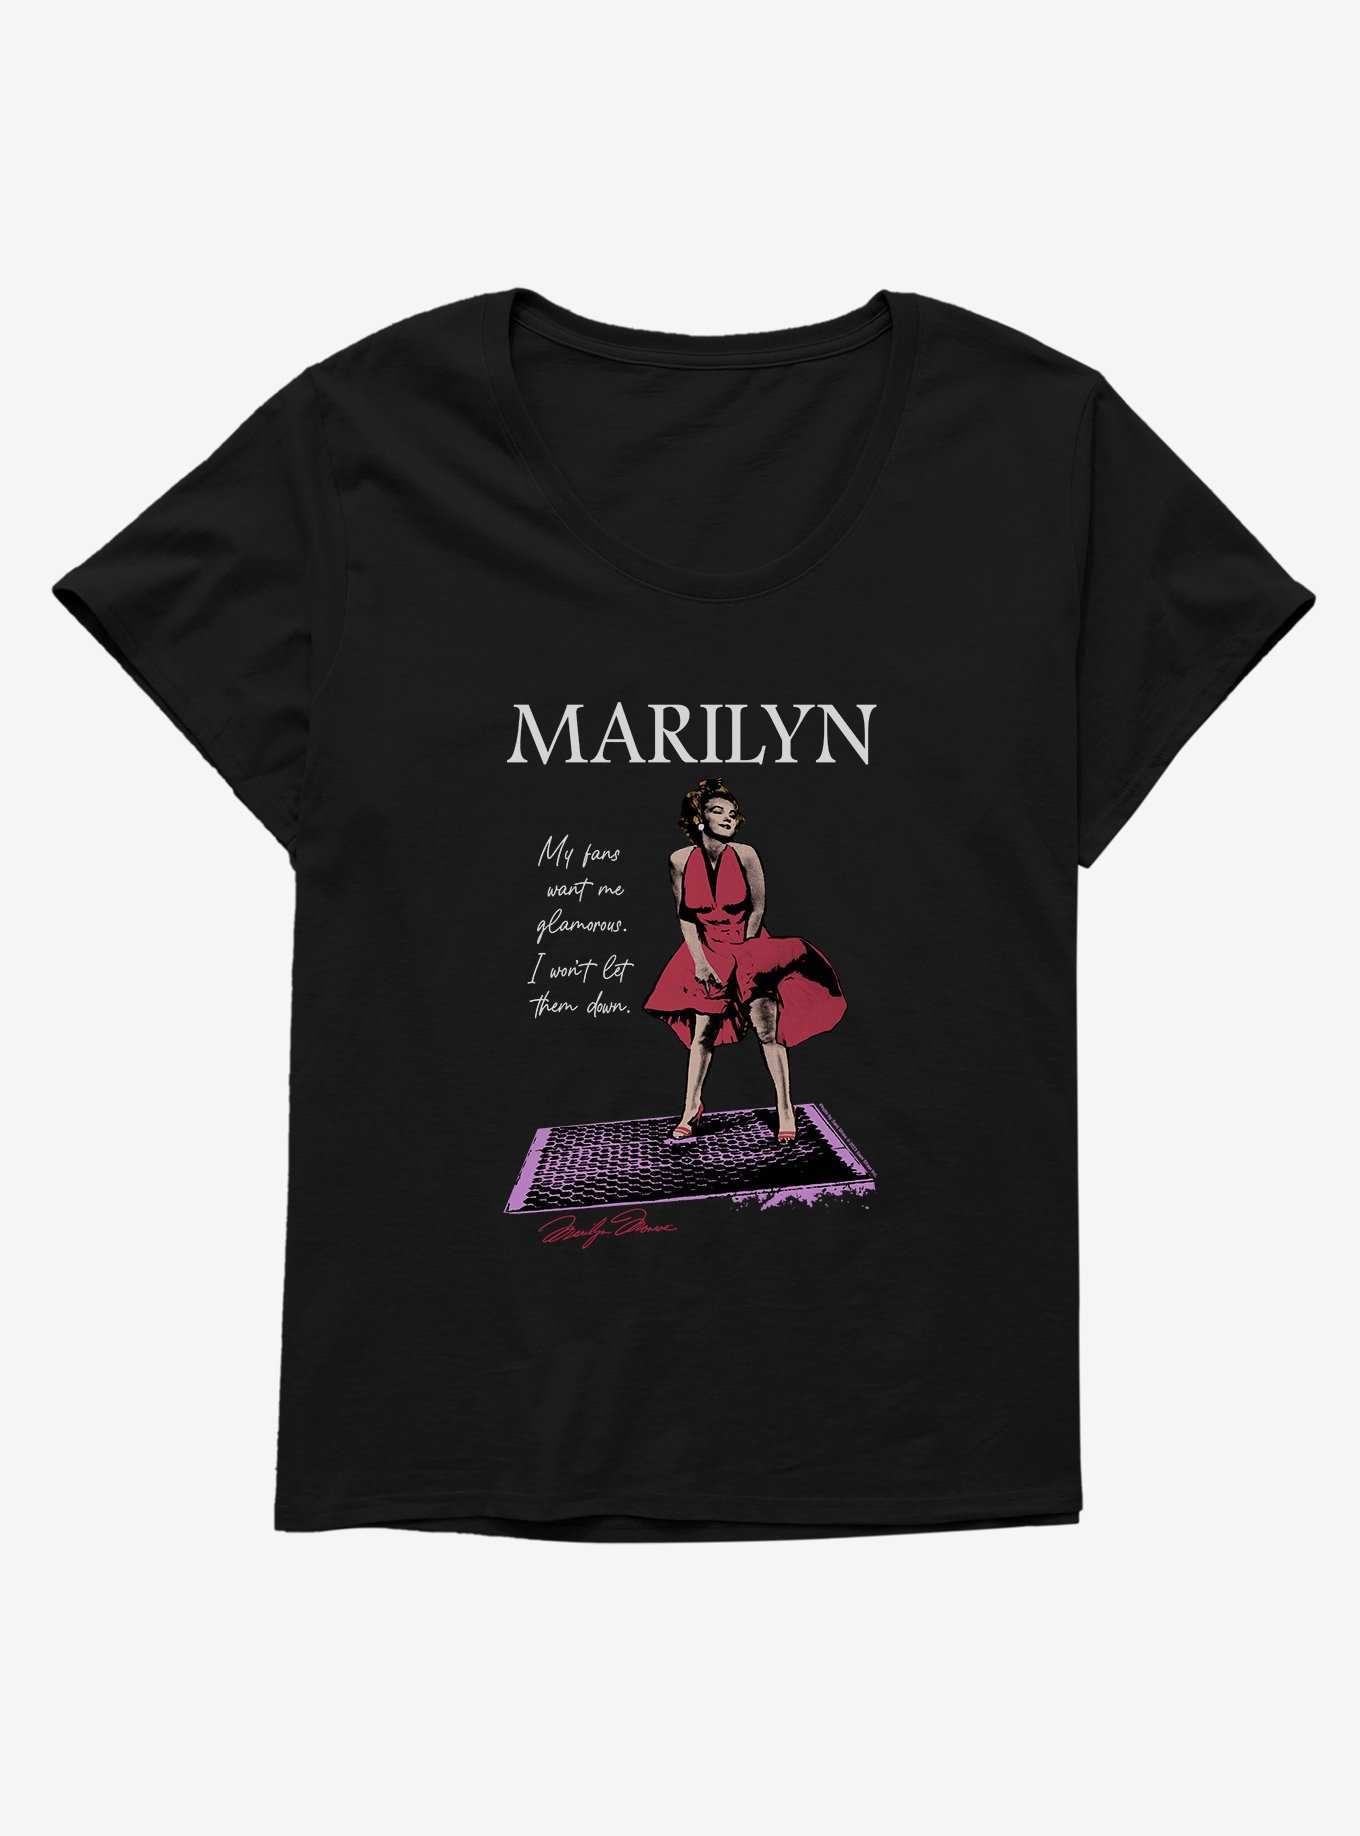 Marilyn Monroe Glamorous Red Dress Girls T-Shirt Plus Size, , hi-res